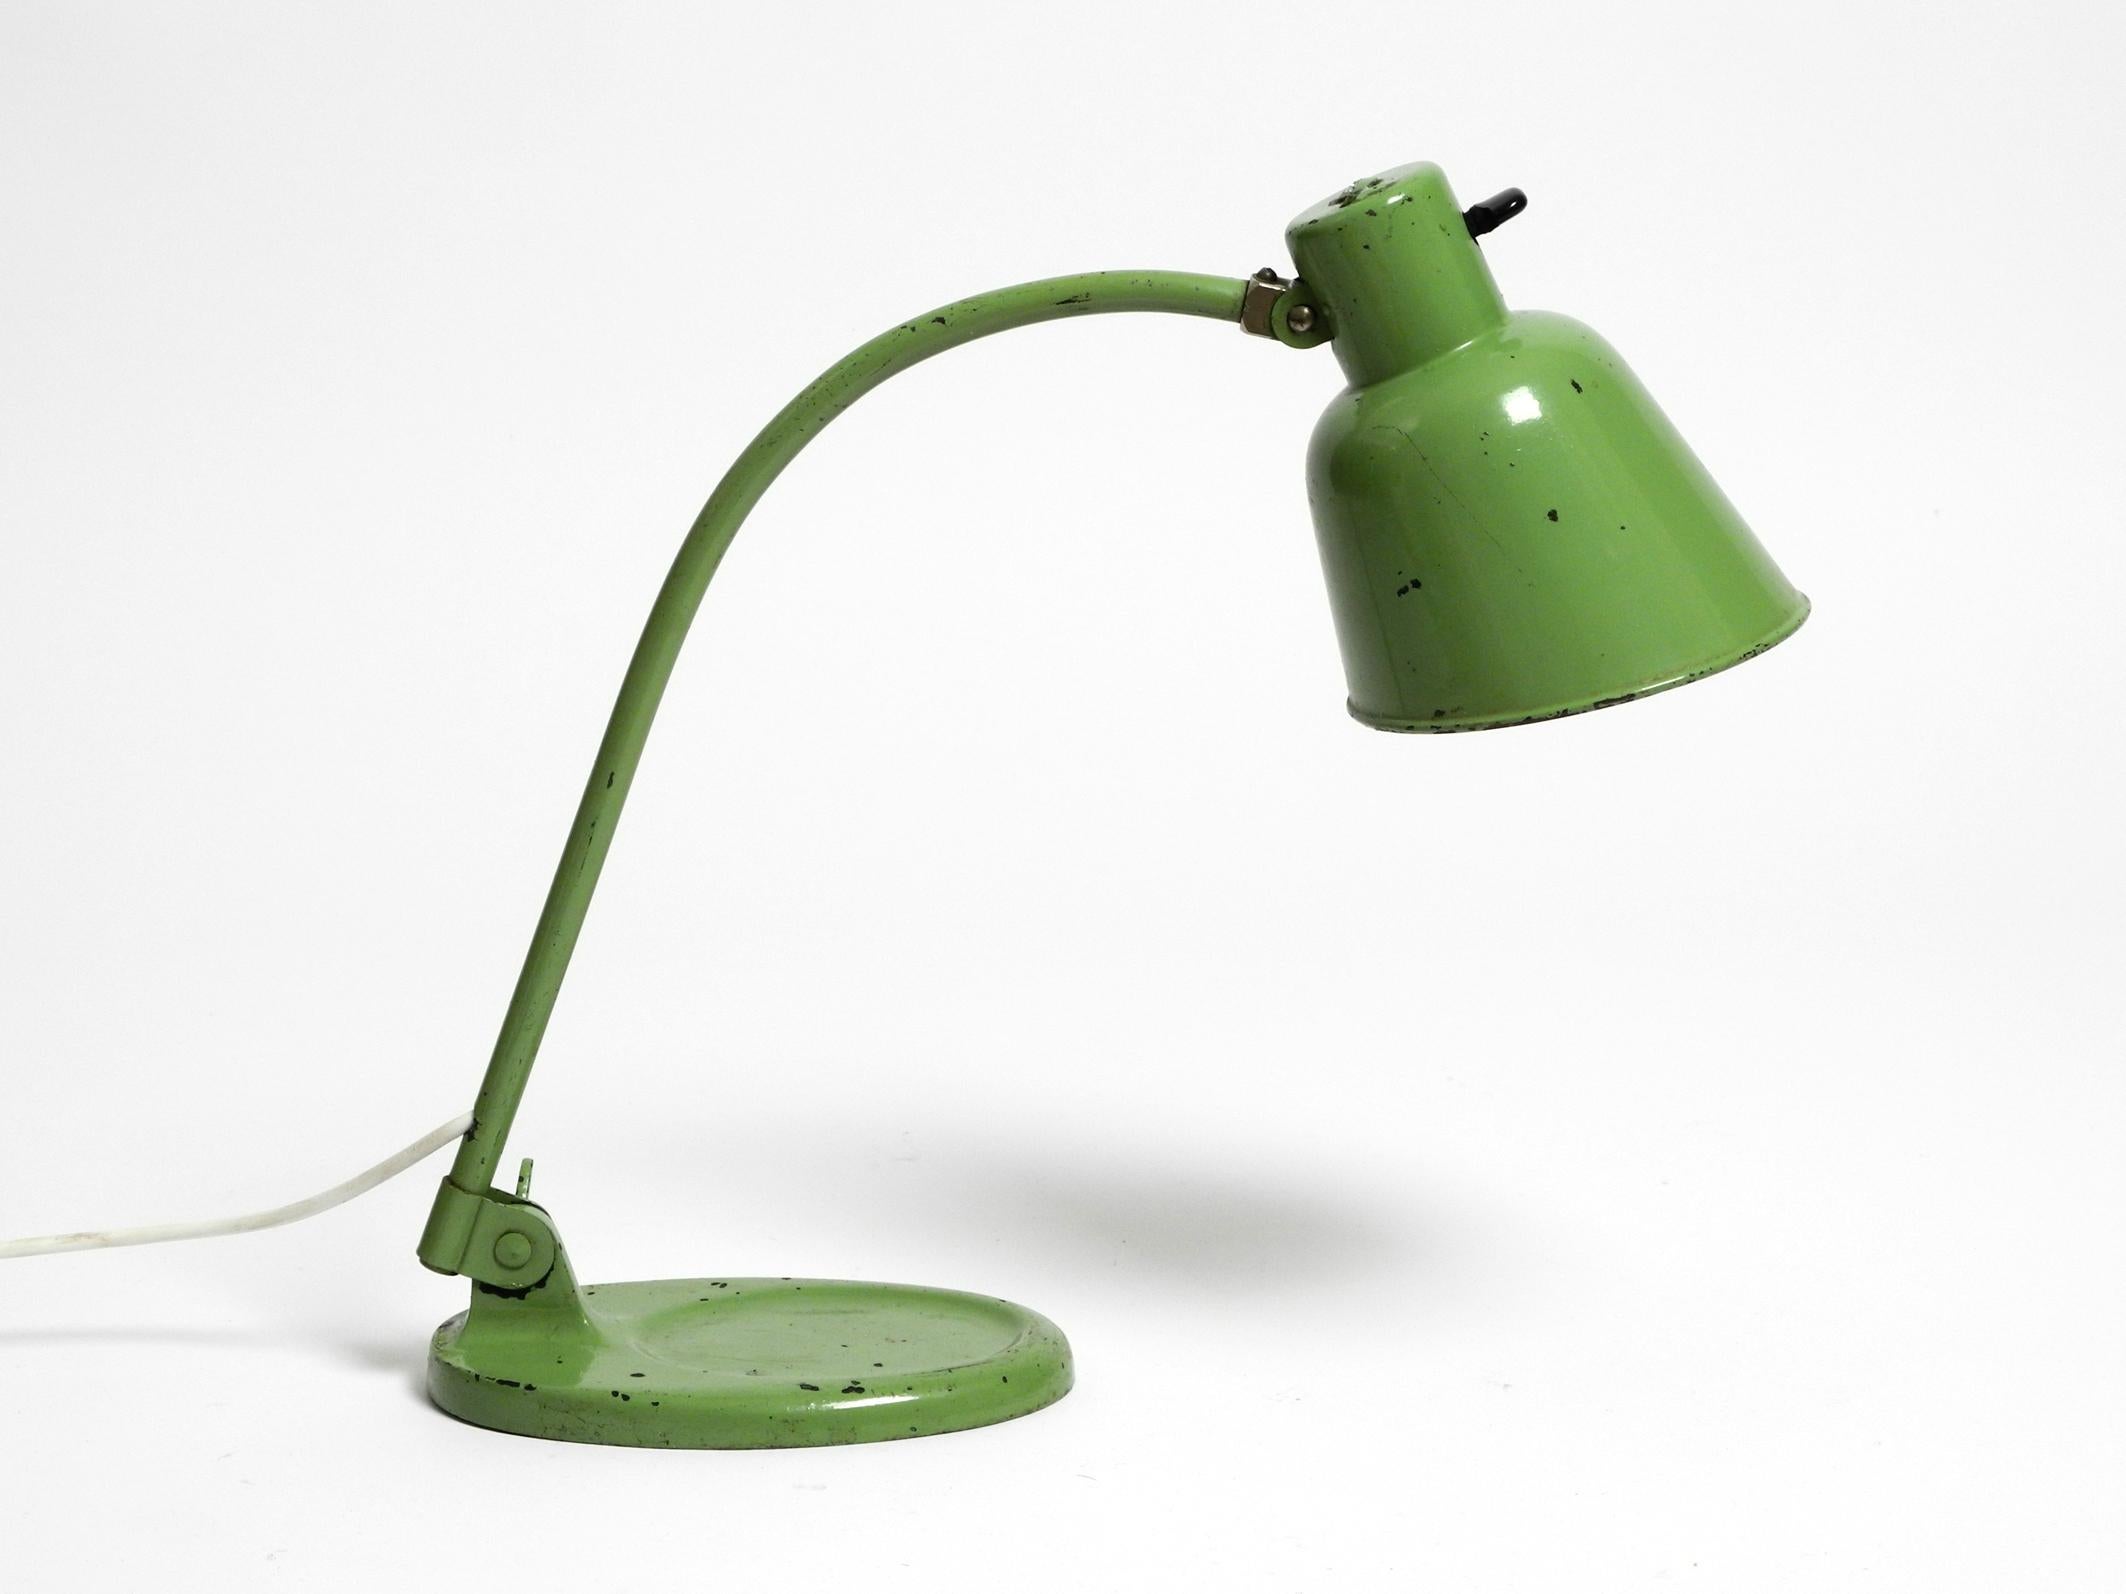 Lampe de table originale des années 1930 par Christian Dell pour Bünte & Remmler, Allemagne.
Modèle MATADOR fabriqué à la main dans un vert industriel rare.
Victor Bünte et Franz Remmler ont été les premiers à fabriquer des lampes à pétrole.
Dans